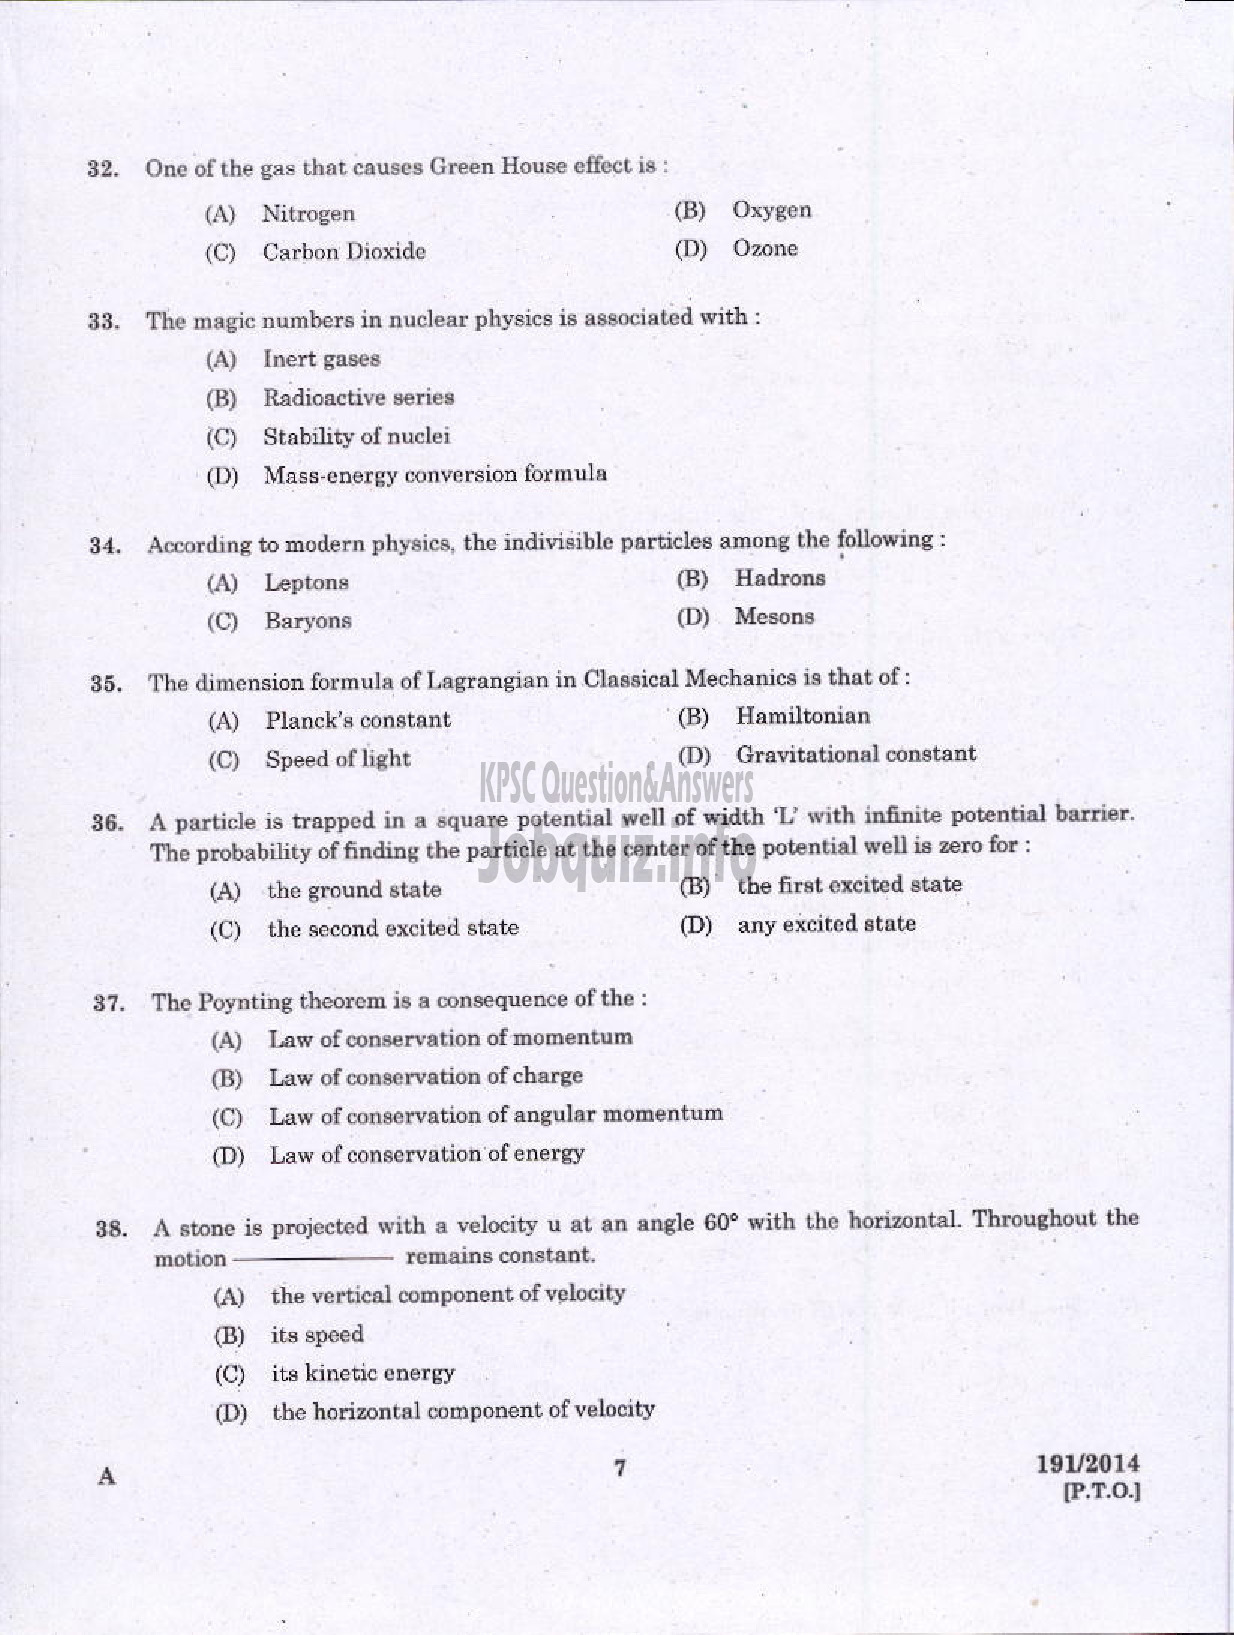 Kerala PSC Question Paper - FIELD OFFICER KERALA FOREST DEVELOPMENT CORPORATION LTD-5